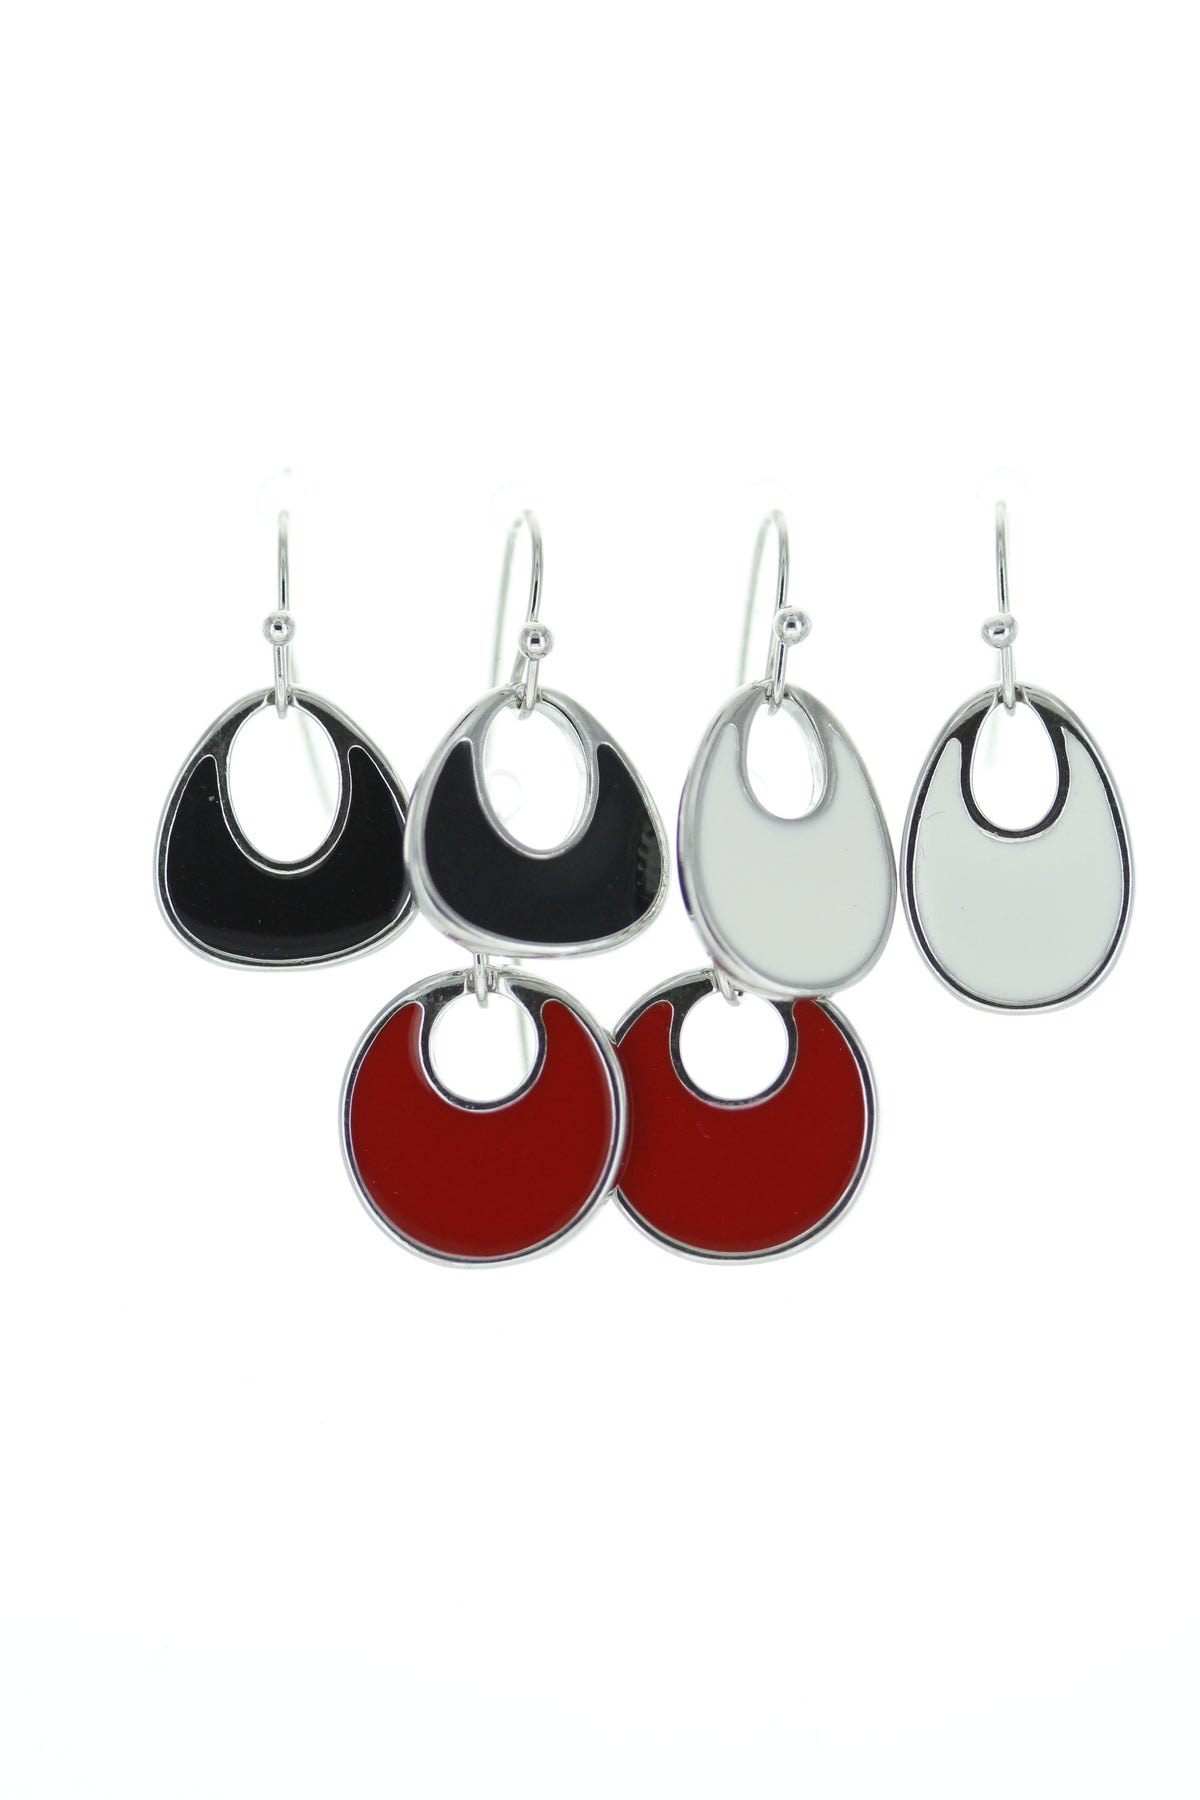 3160-817E Multi Pack Oval Shape Mod Inspired Enamel Earrings (Pack of 3)